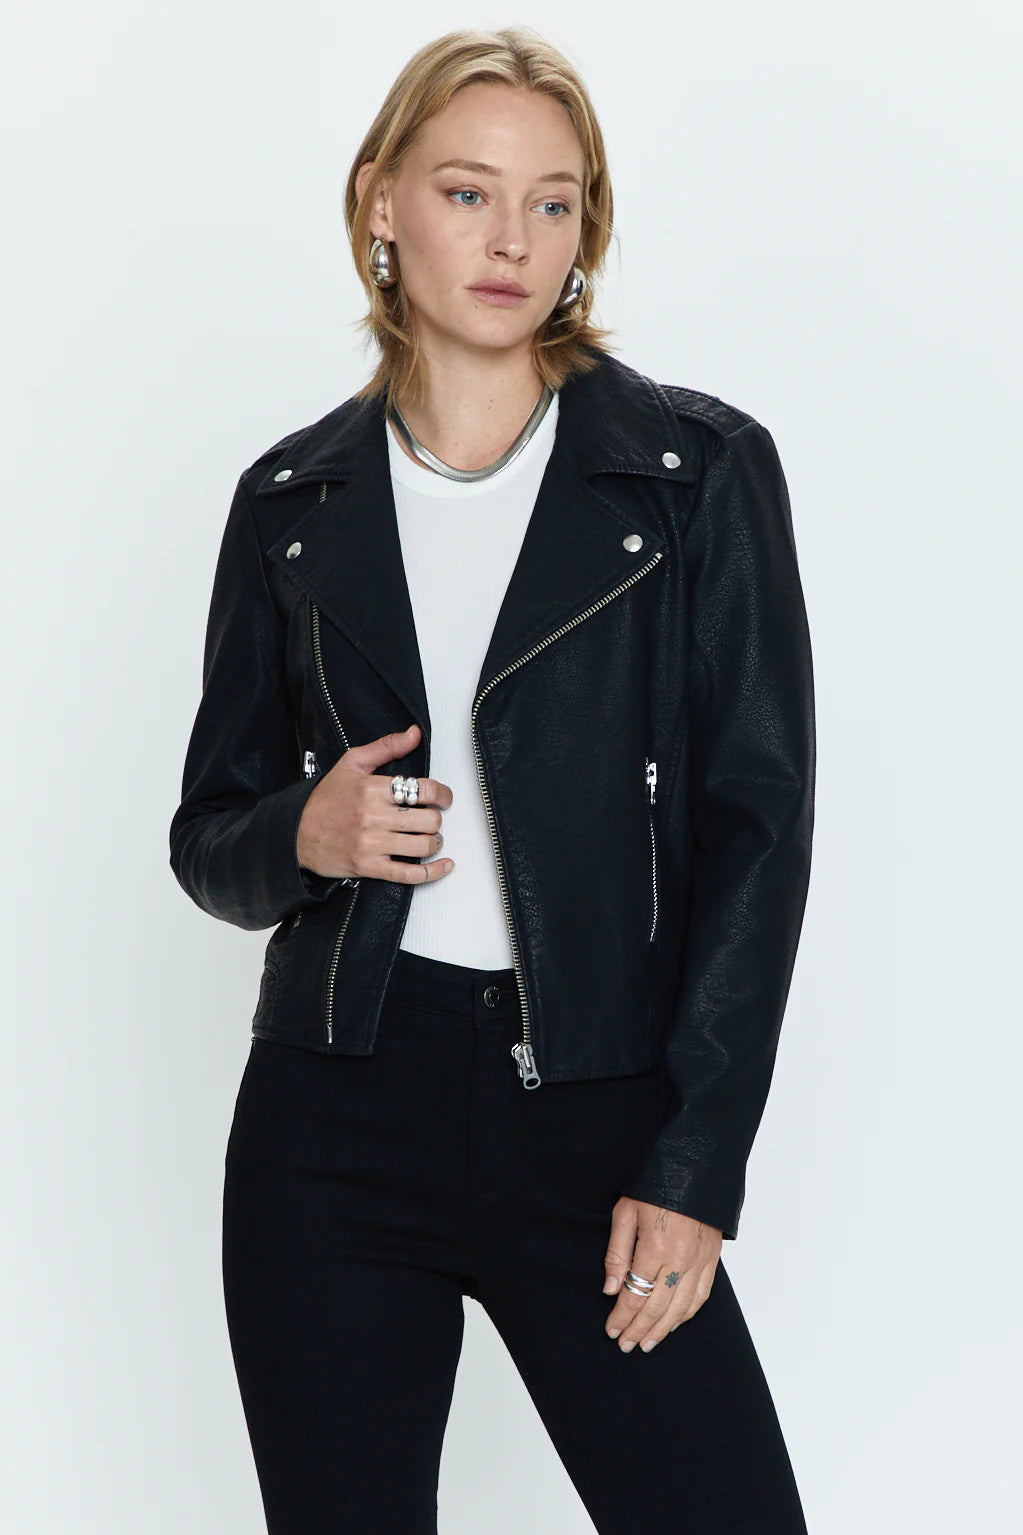 Nicolette Zipper Jacket in Black by PISTOLA